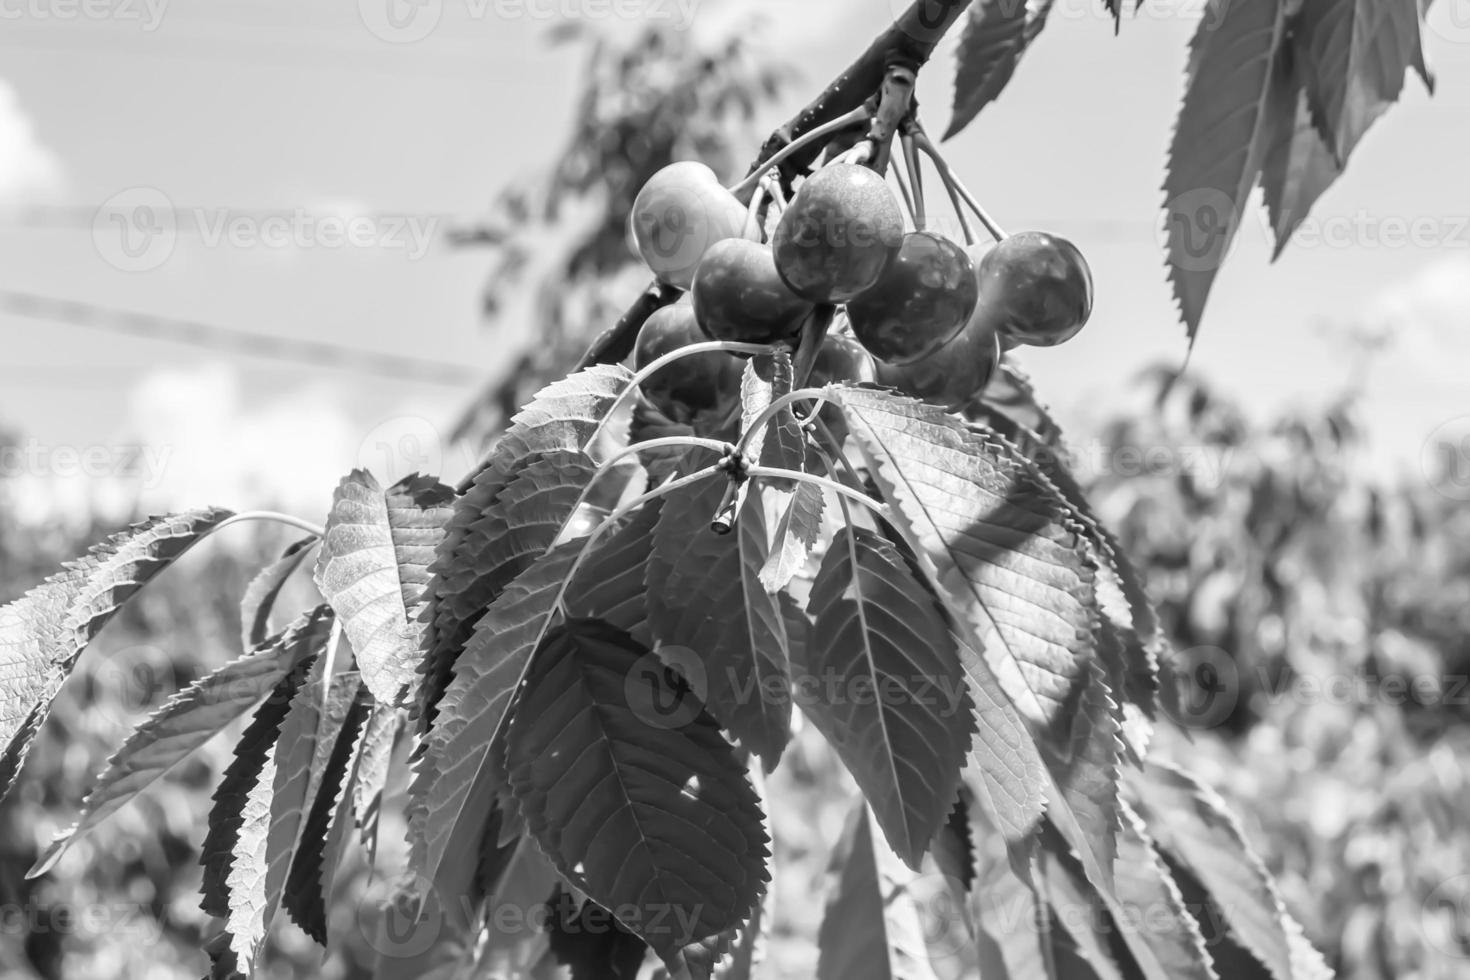 fotografia sobre o tema lindo ramo de frutas cerejeira foto